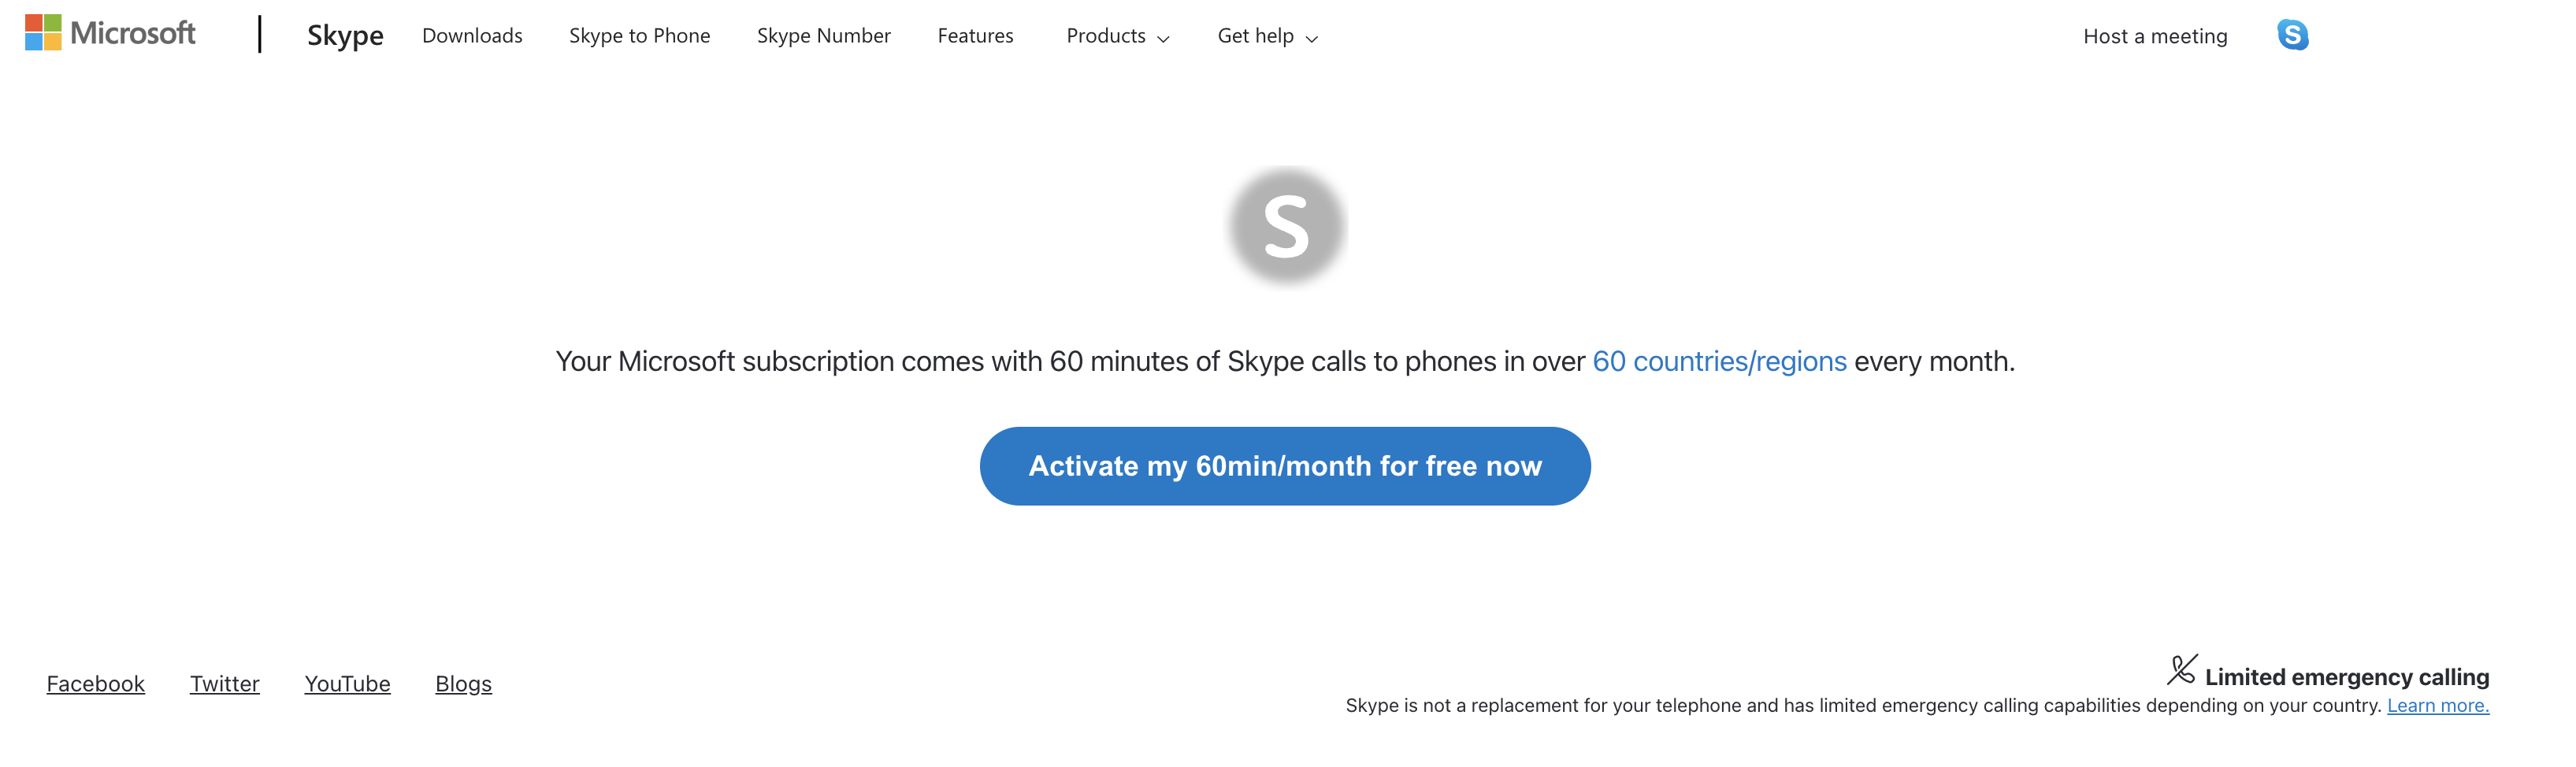 Cómo compruebo el estado de mi pedido de Skype?